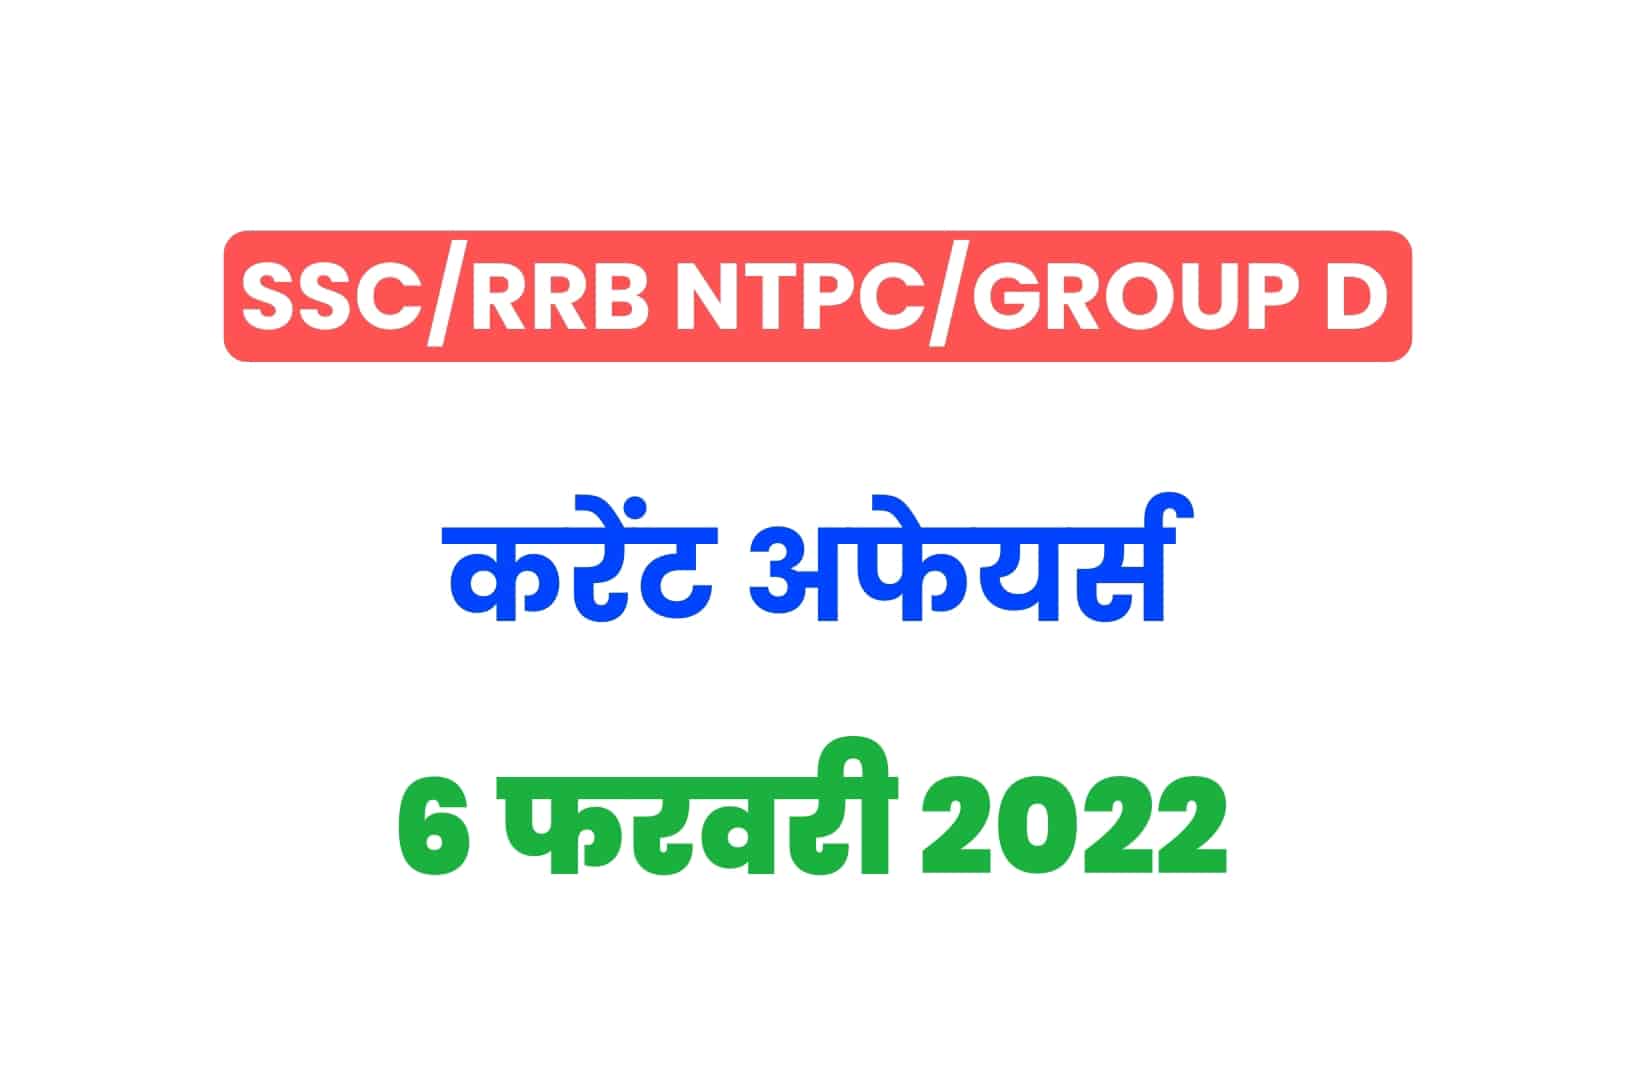 SSC/RRB Group D/NTPC Exam 2022: 6 फरवरी के 15 महत्वपूर्ण करेंट अफेयर्स के प्रश्न, जरूर पढ़ें